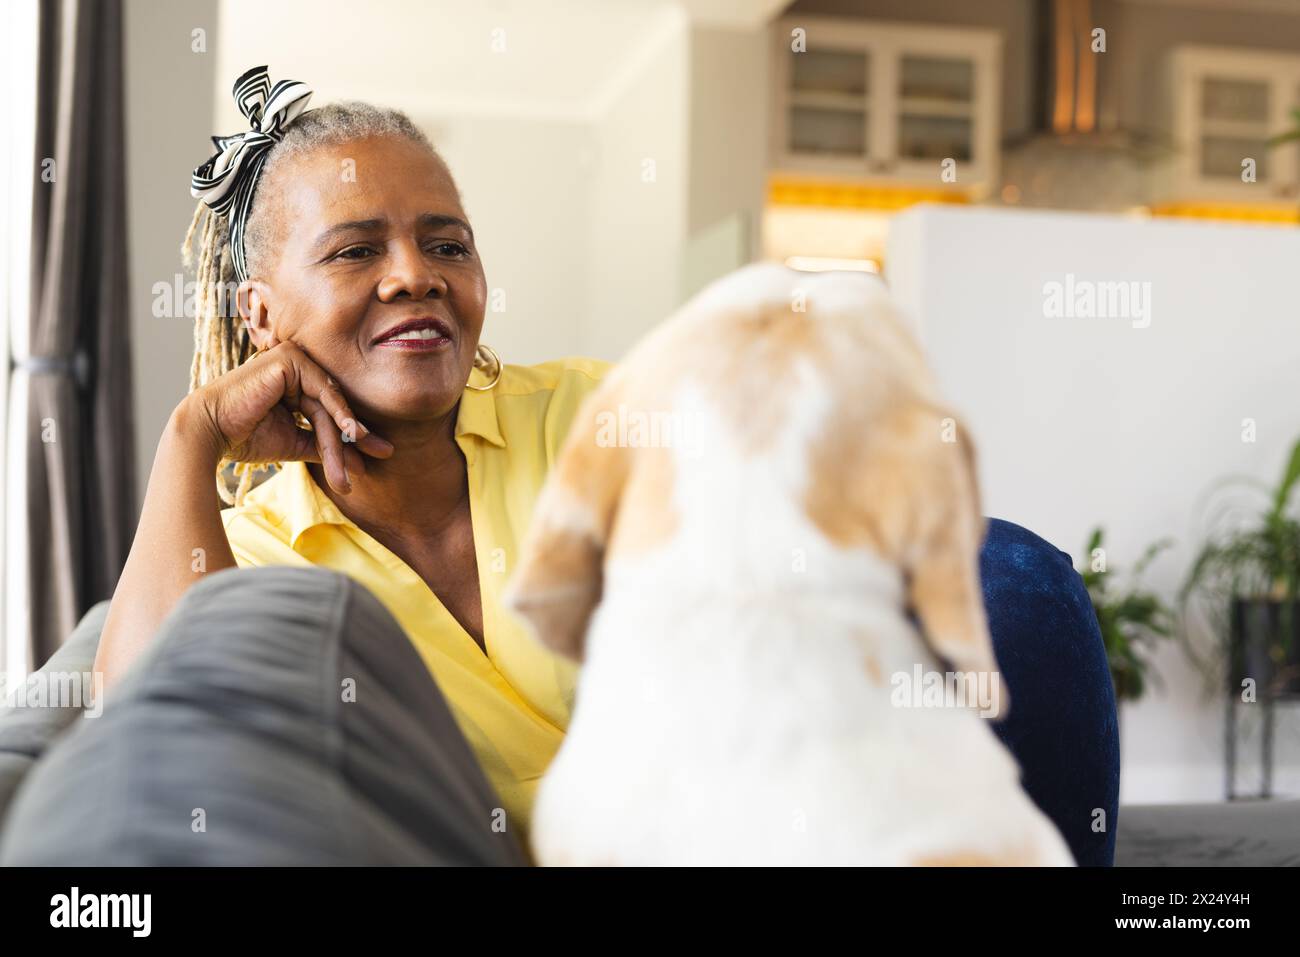 Une femme afro-américaine séniore se détache à la maison avec son chien. Elle a les cheveux gris, porte une chemise jaune, et sourit doucement. Banque D'Images